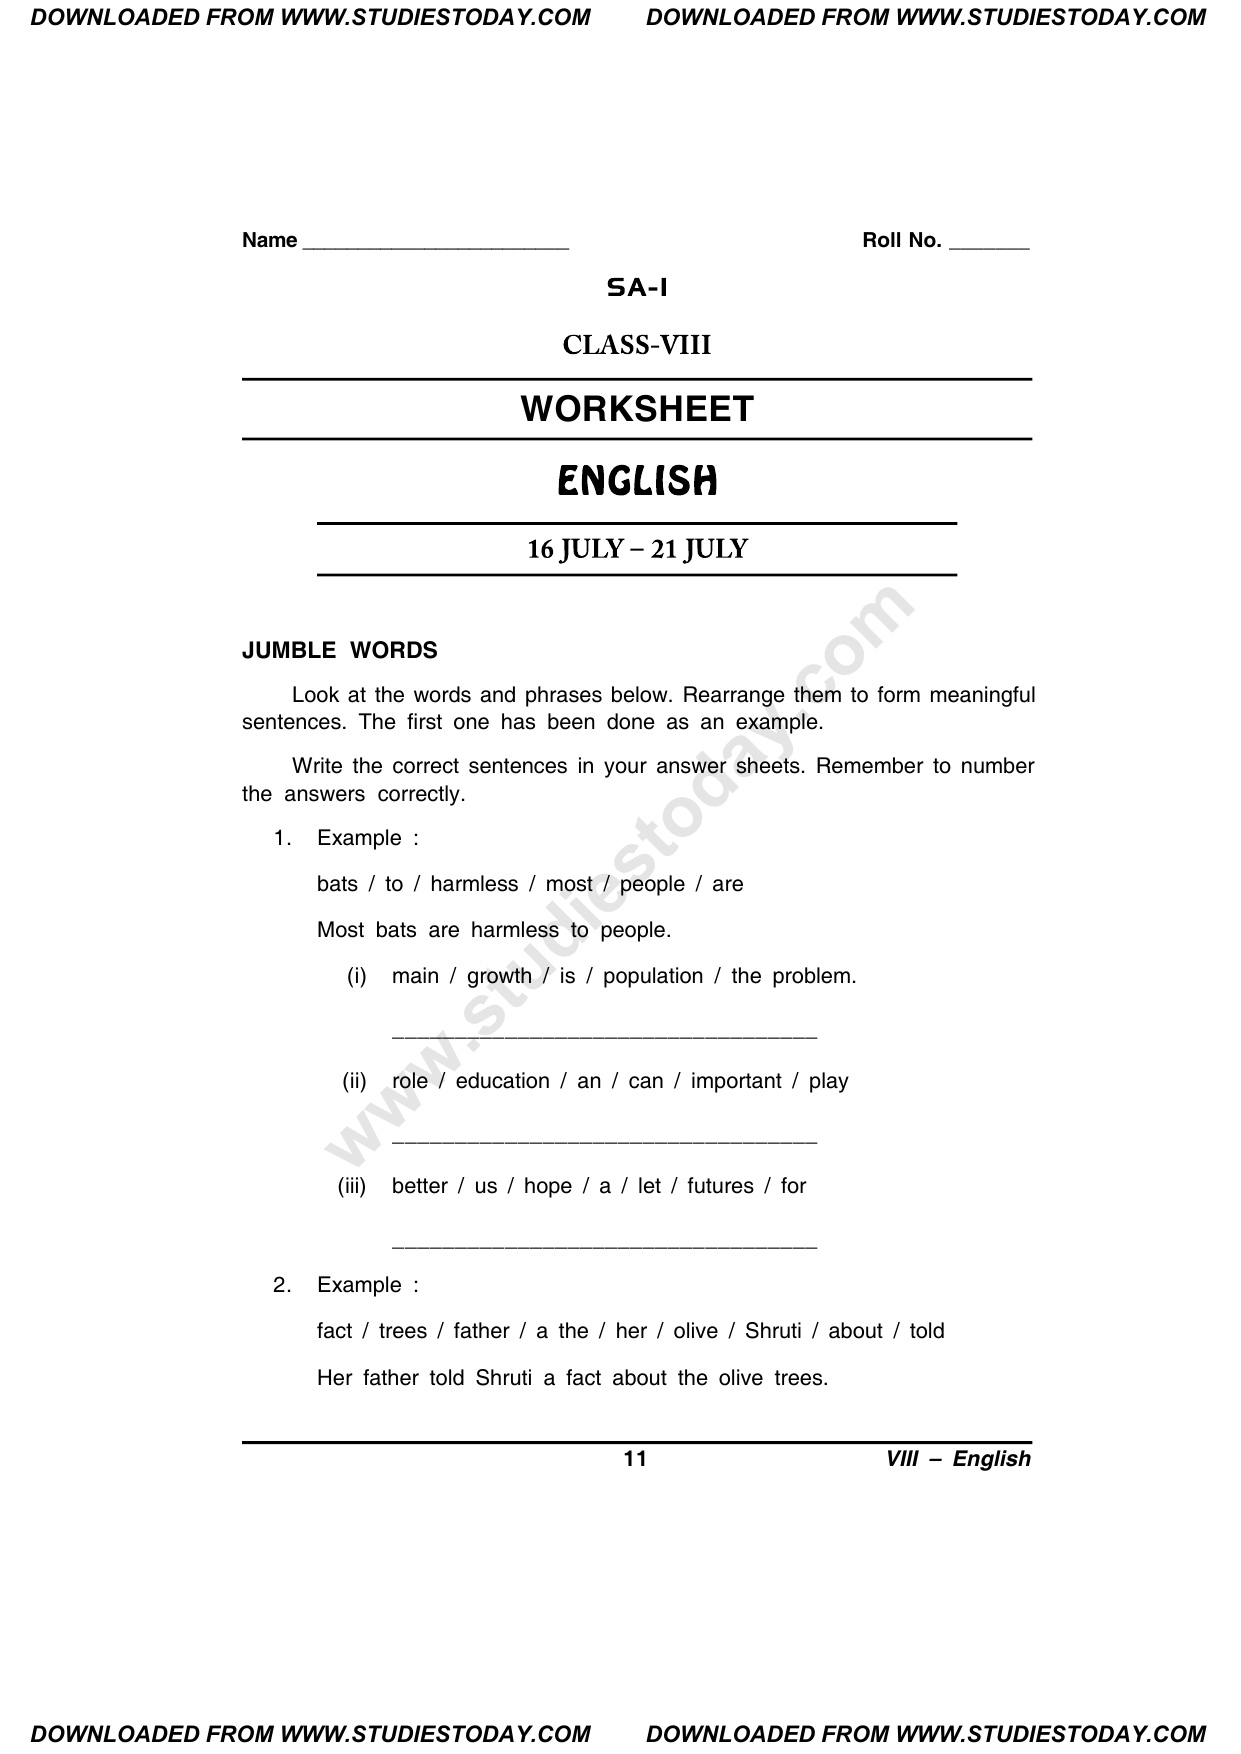 cbse-class-8-english-worksheet-9